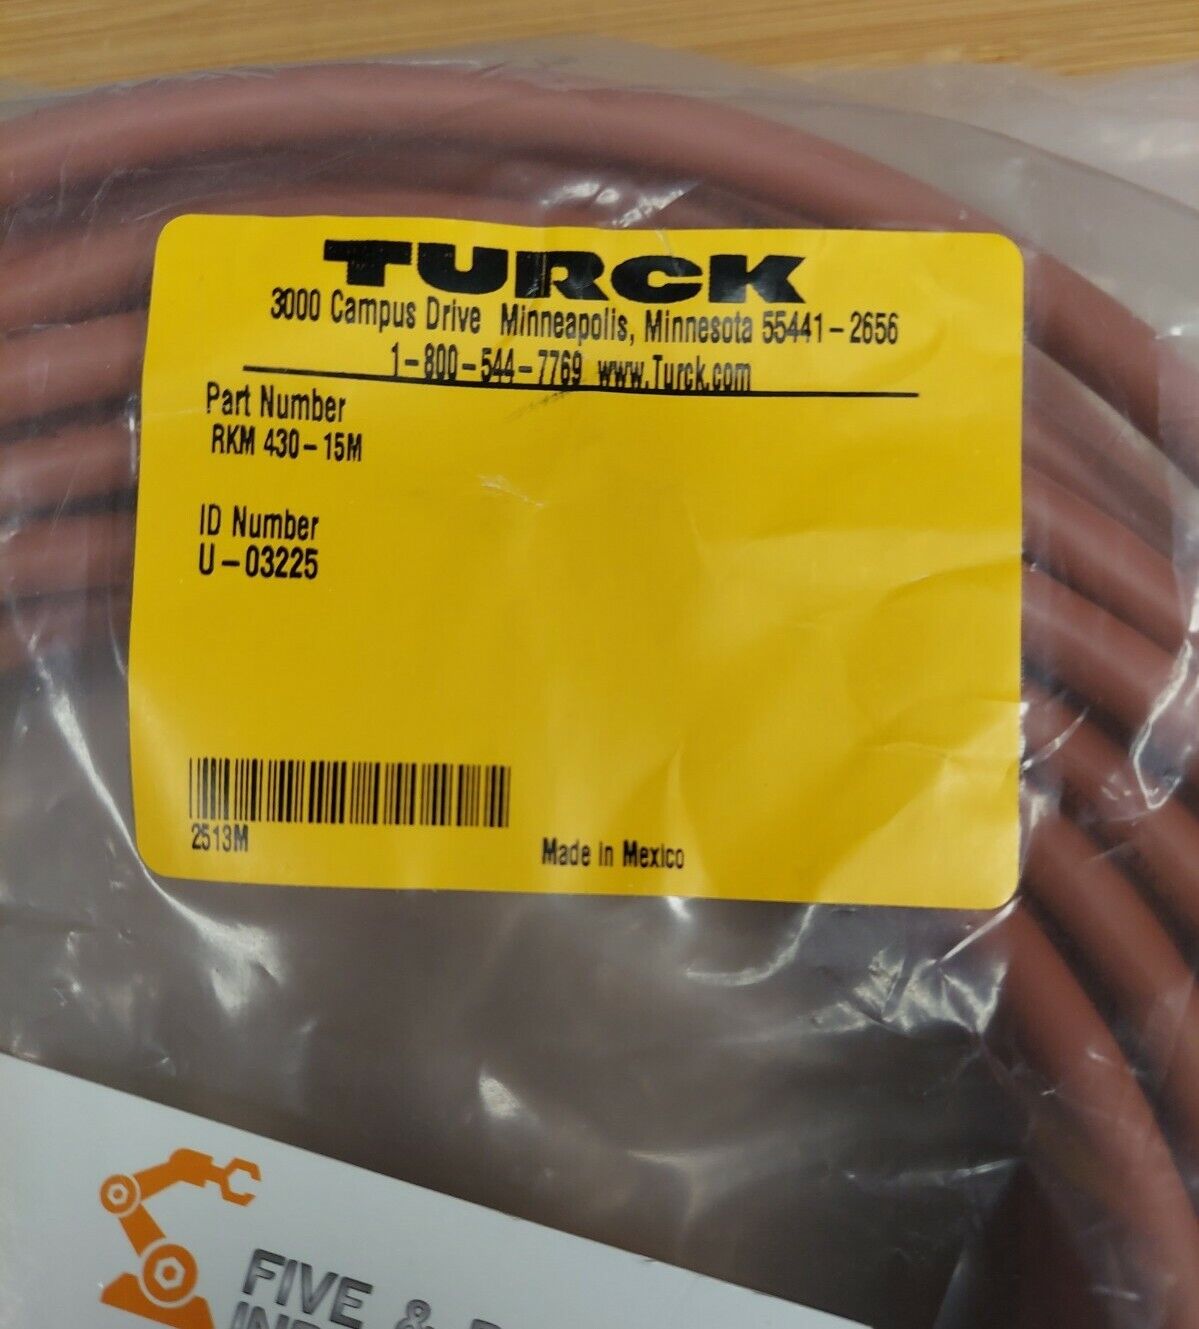 Turck RSM RKM 430-15M CABLE / CORDSET U-03225 (CBL105) - 0